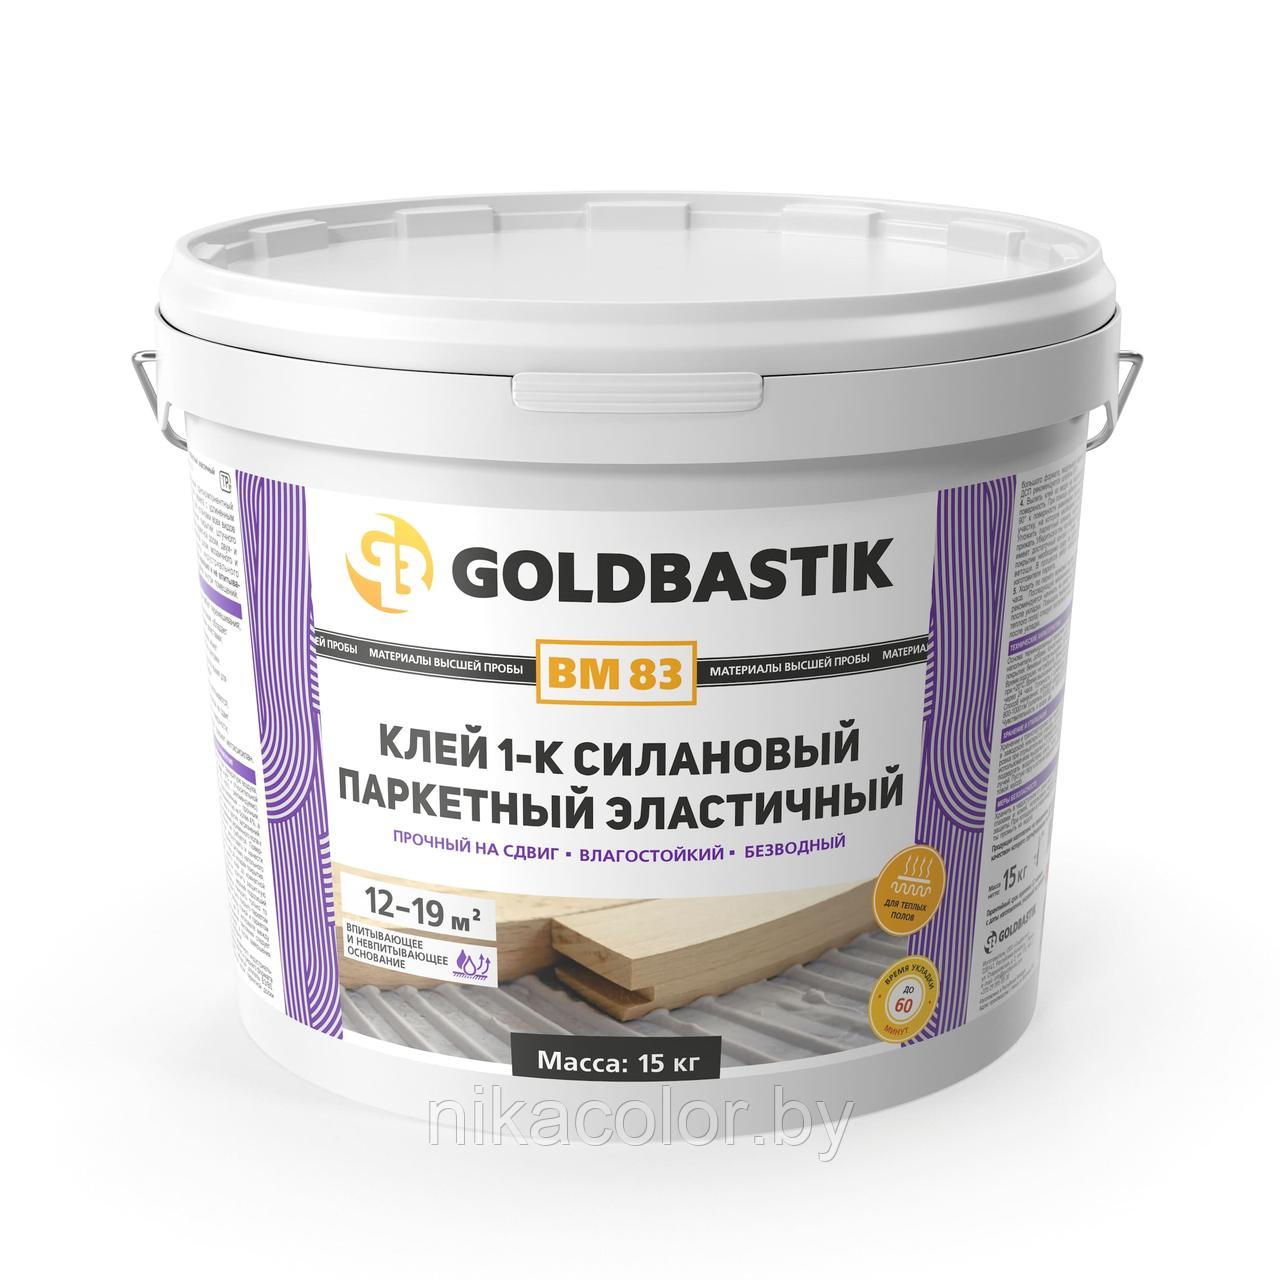 Клей Goldbastik 1-к силановый паркетный эластичный 7кг